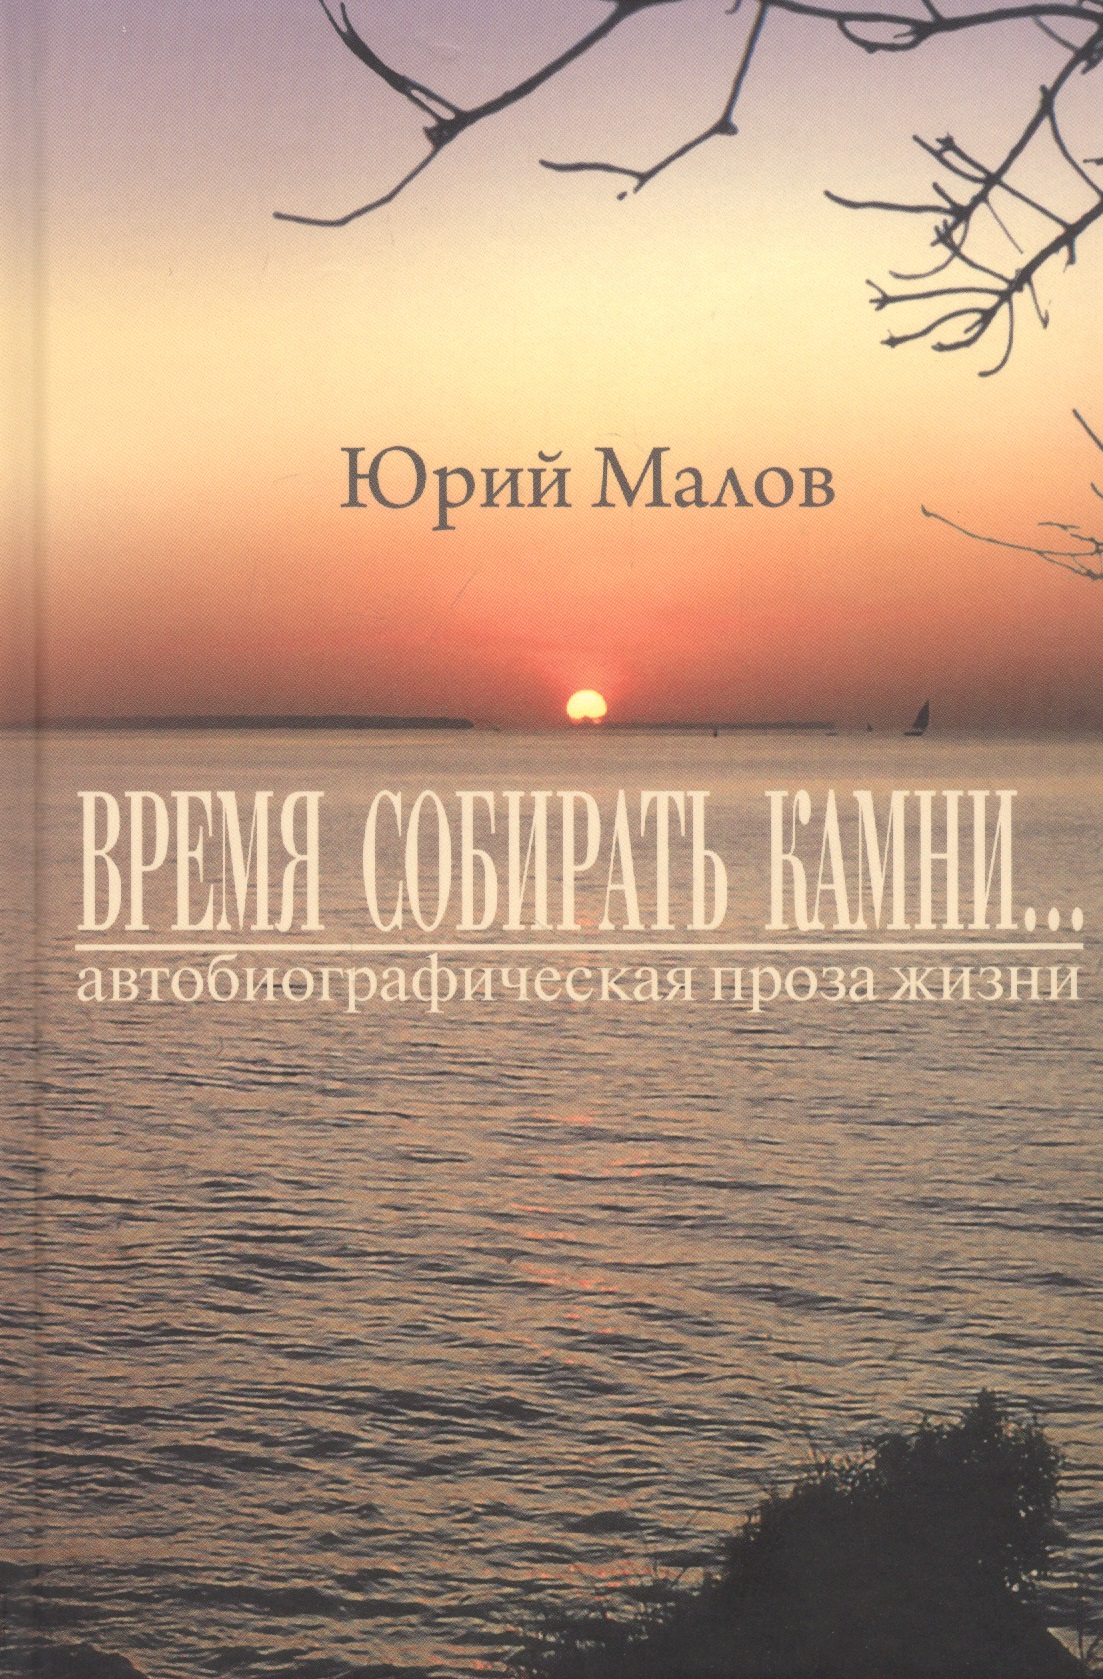 Малов Юрий Александрович Время собирать камни… (автобиографическая проза жизни)